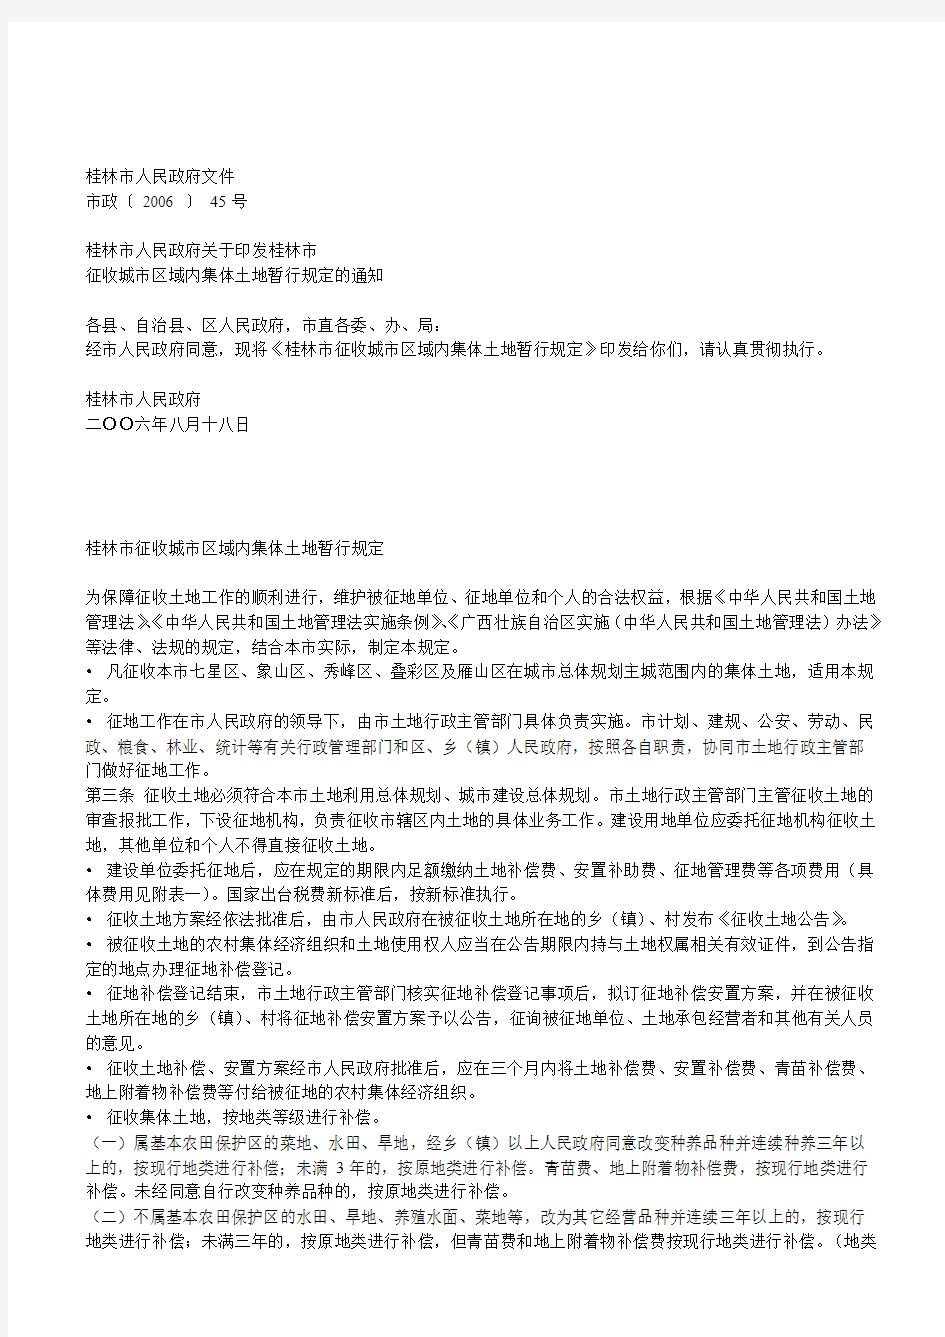 桂林市征收城市区域内集体土地暂行规定